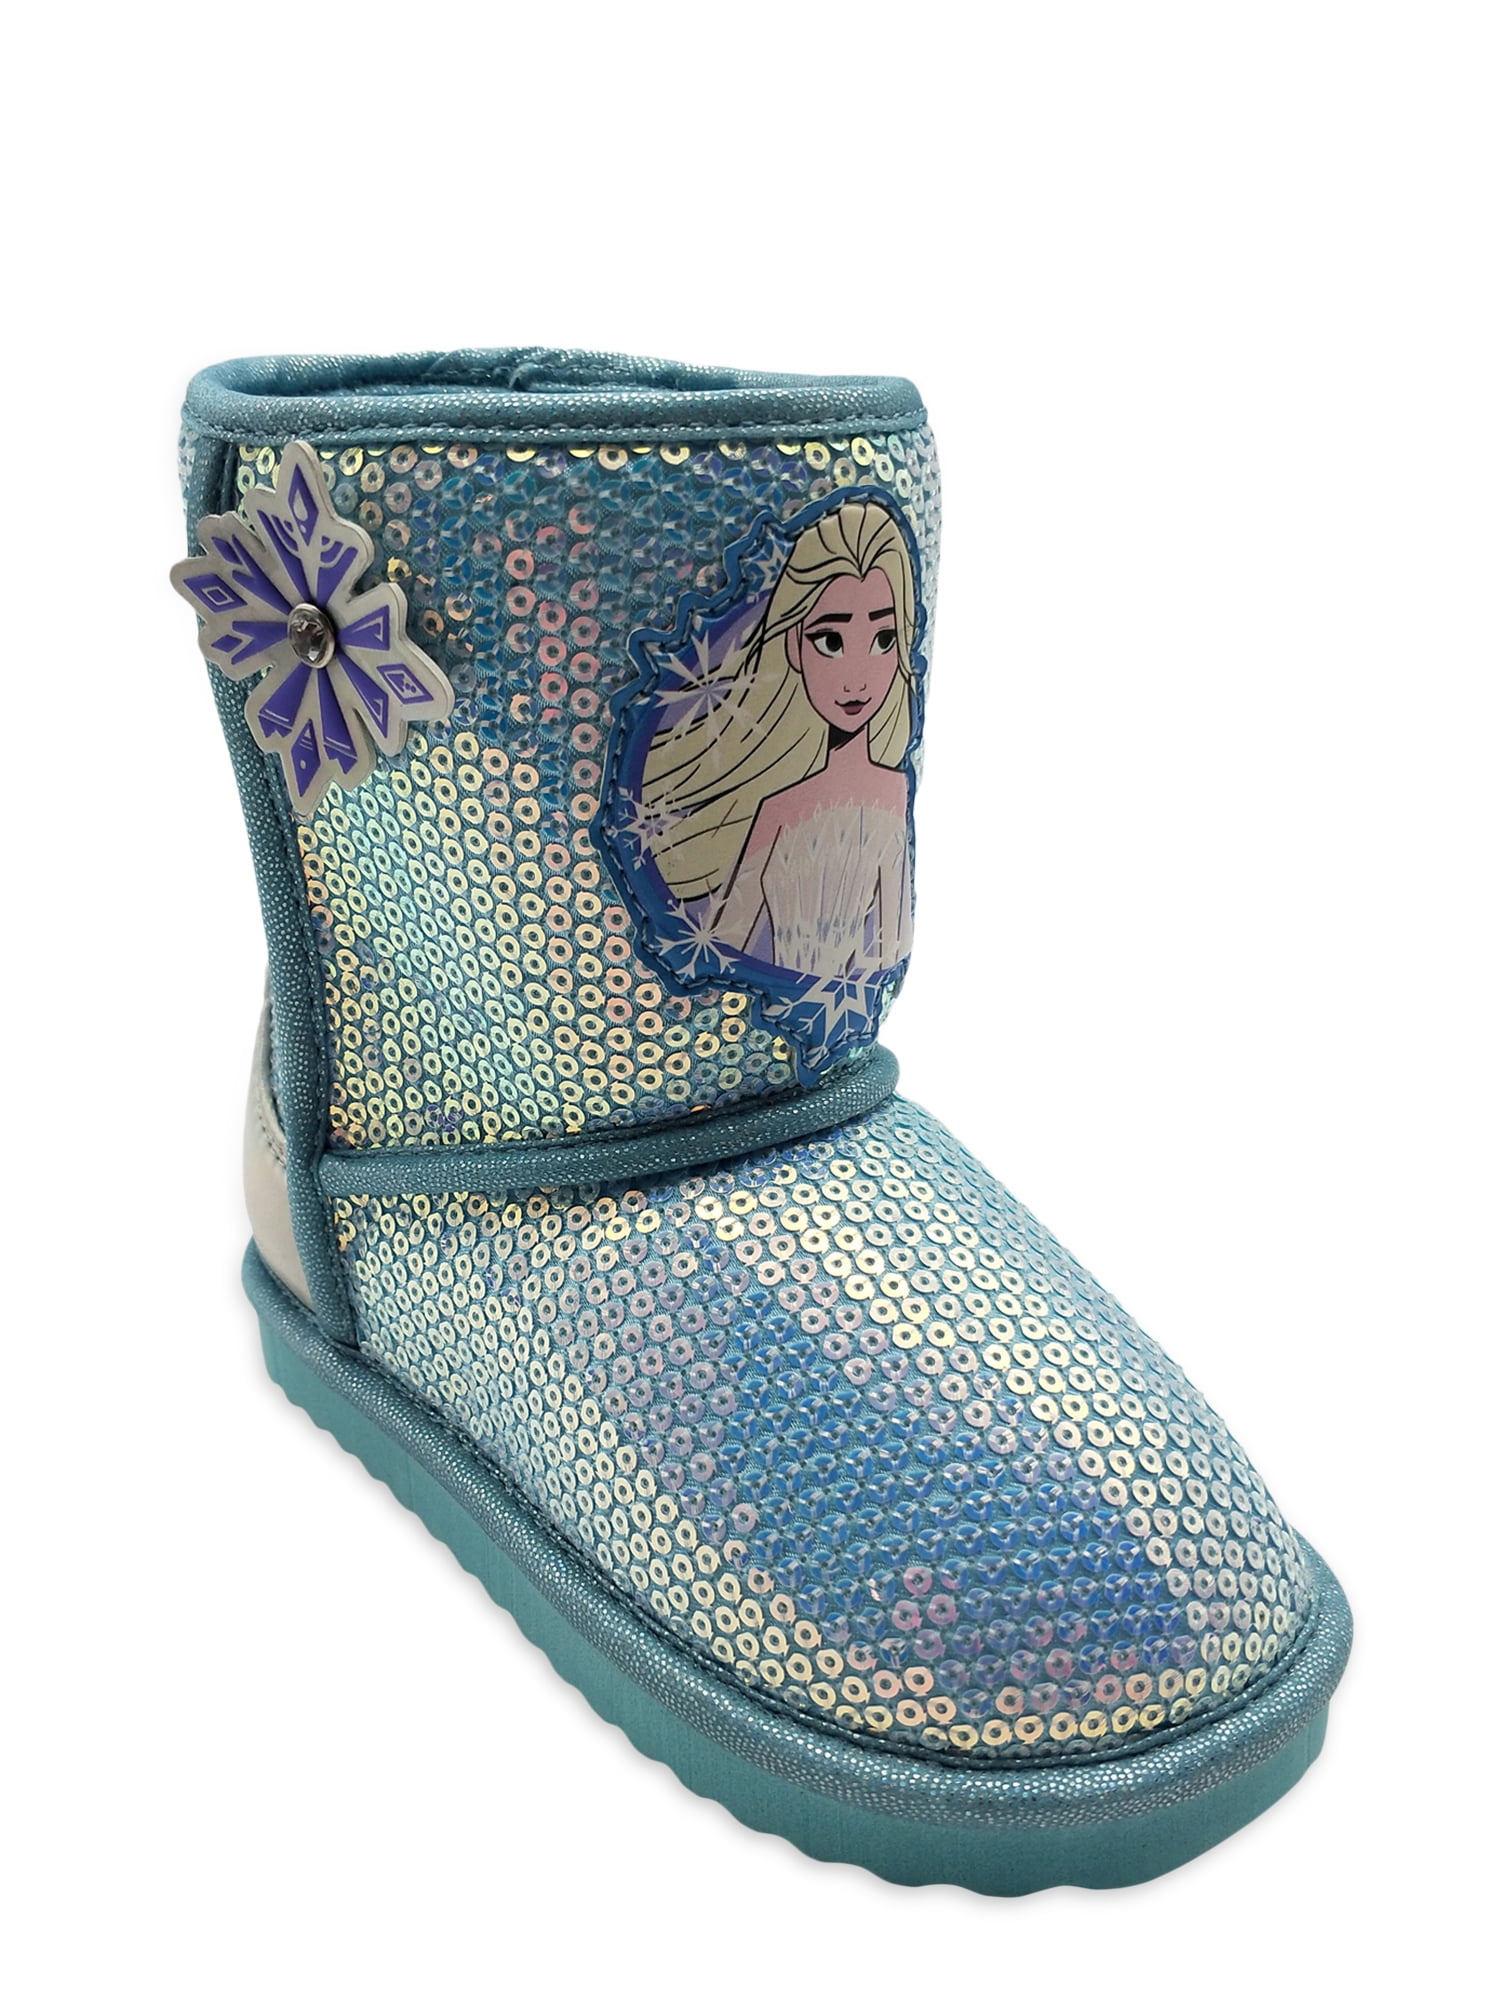 Sz Disney Frozen Elsa & Anna Toddler Girls' Winter Boots 6,10,11 